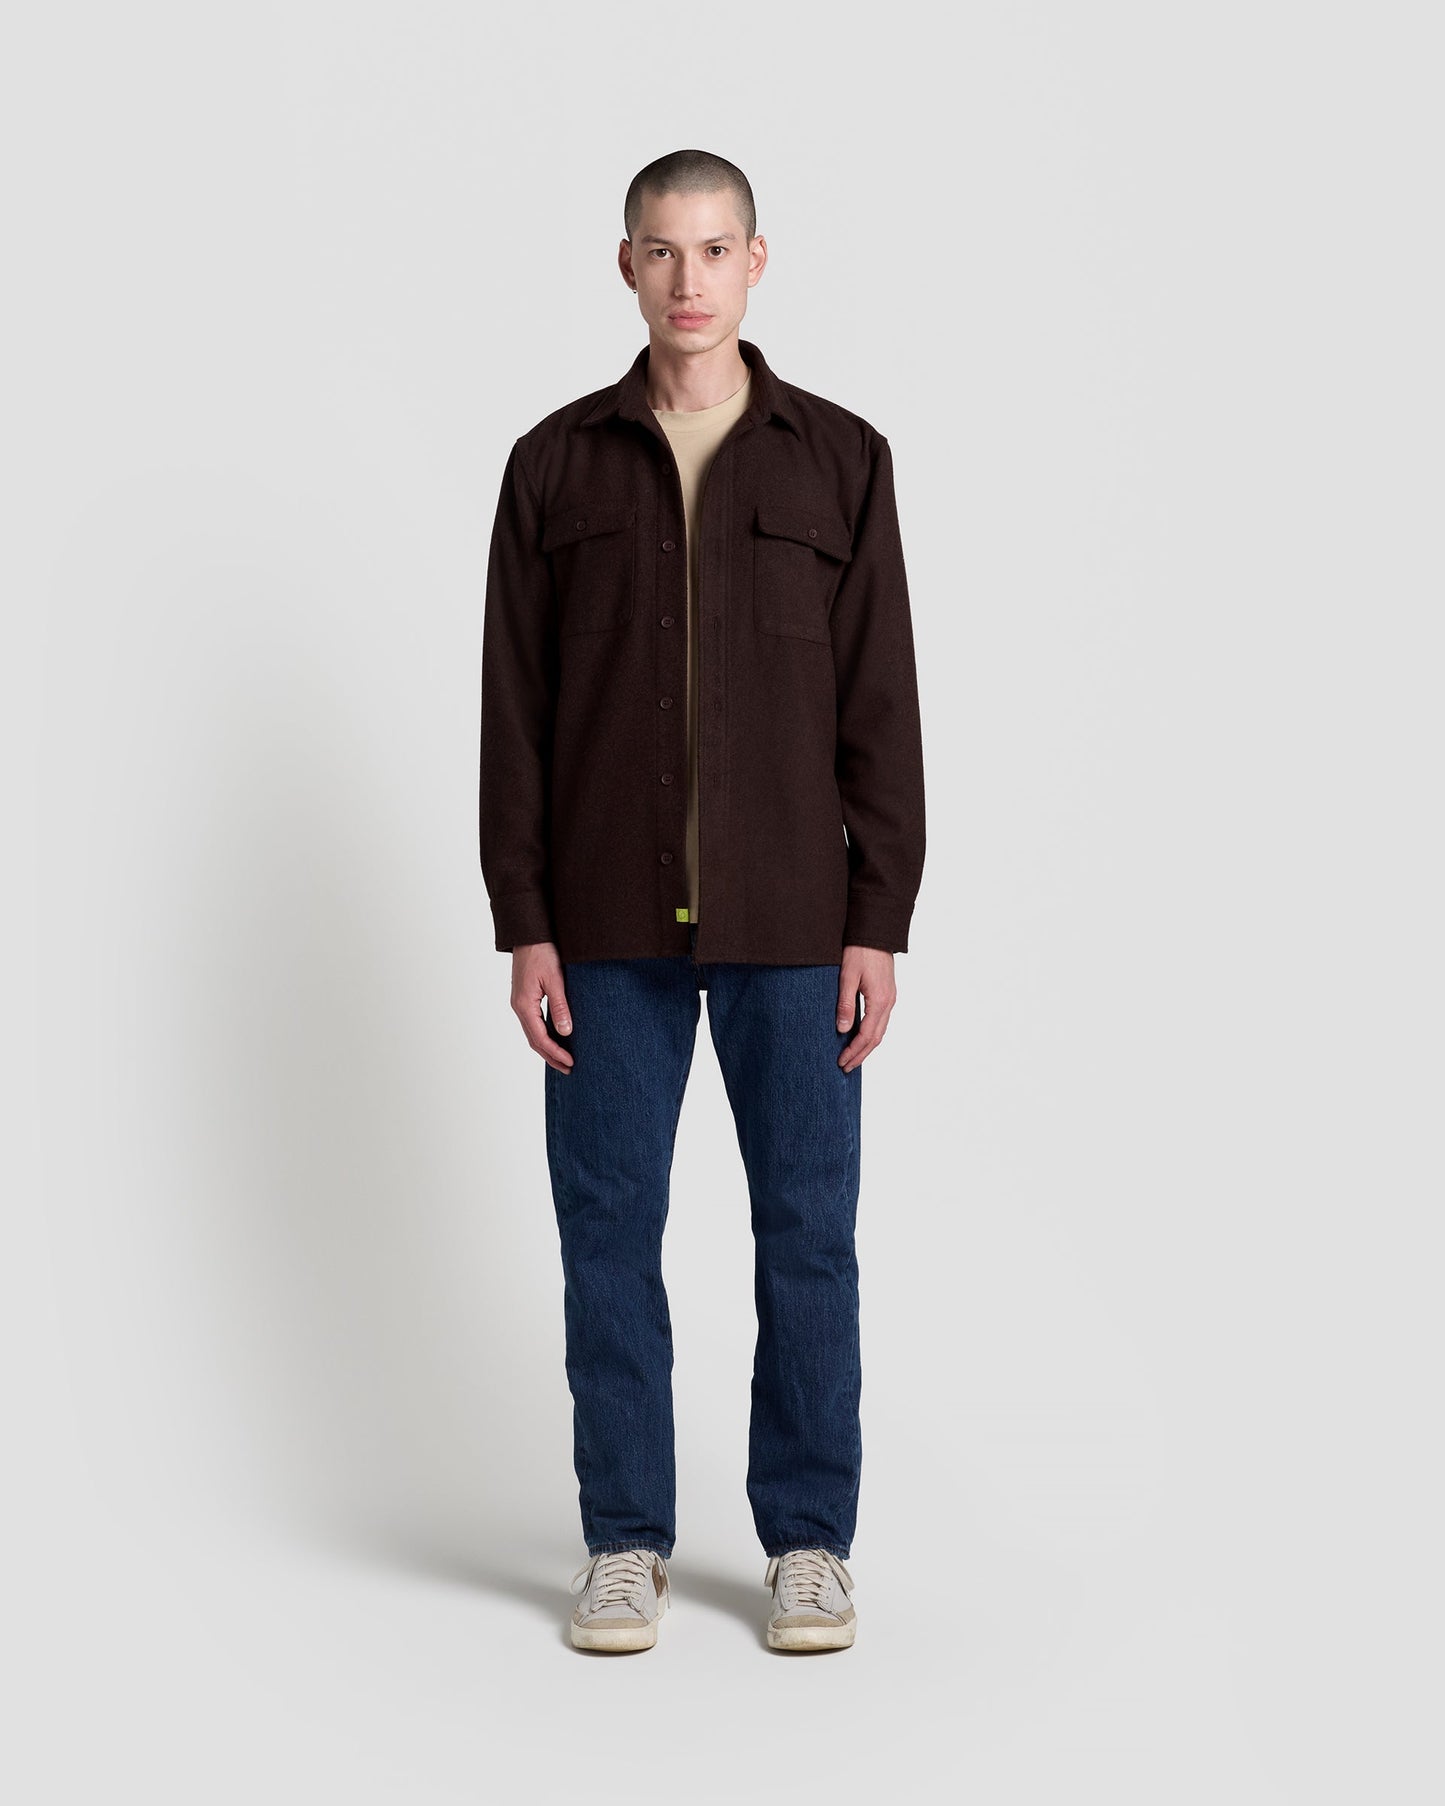 Speckled Brown Shirt Jacket